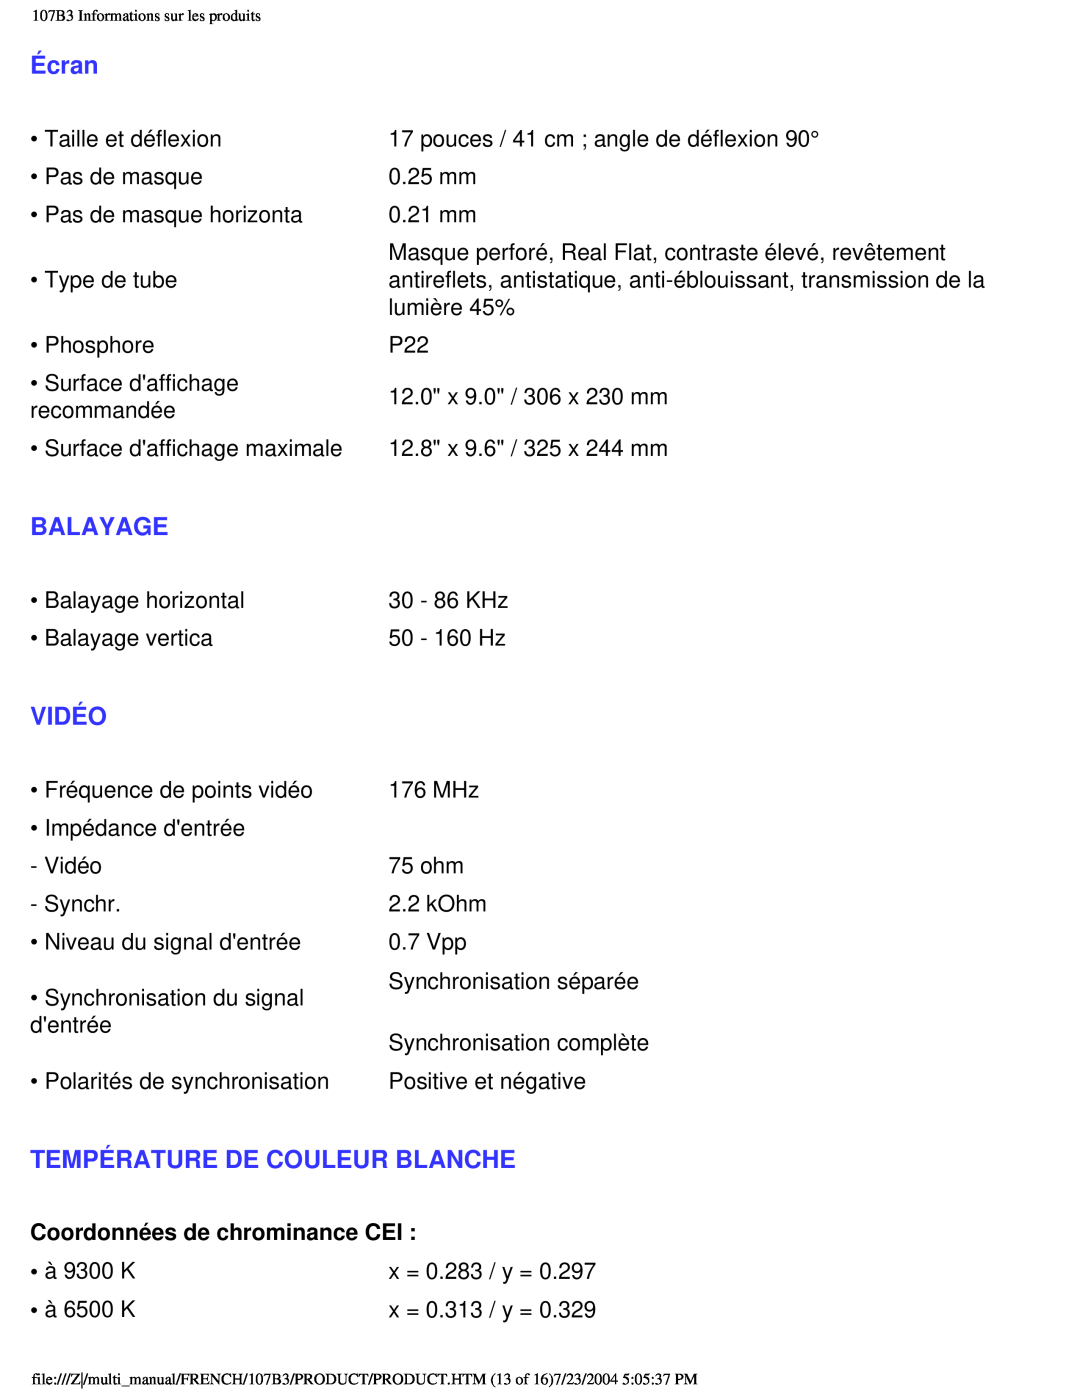 Philips 107B3 user manual Écran, Balayage, Vidéo, Température De Couleur Blanche, Coordonnées de chrominance CEI 